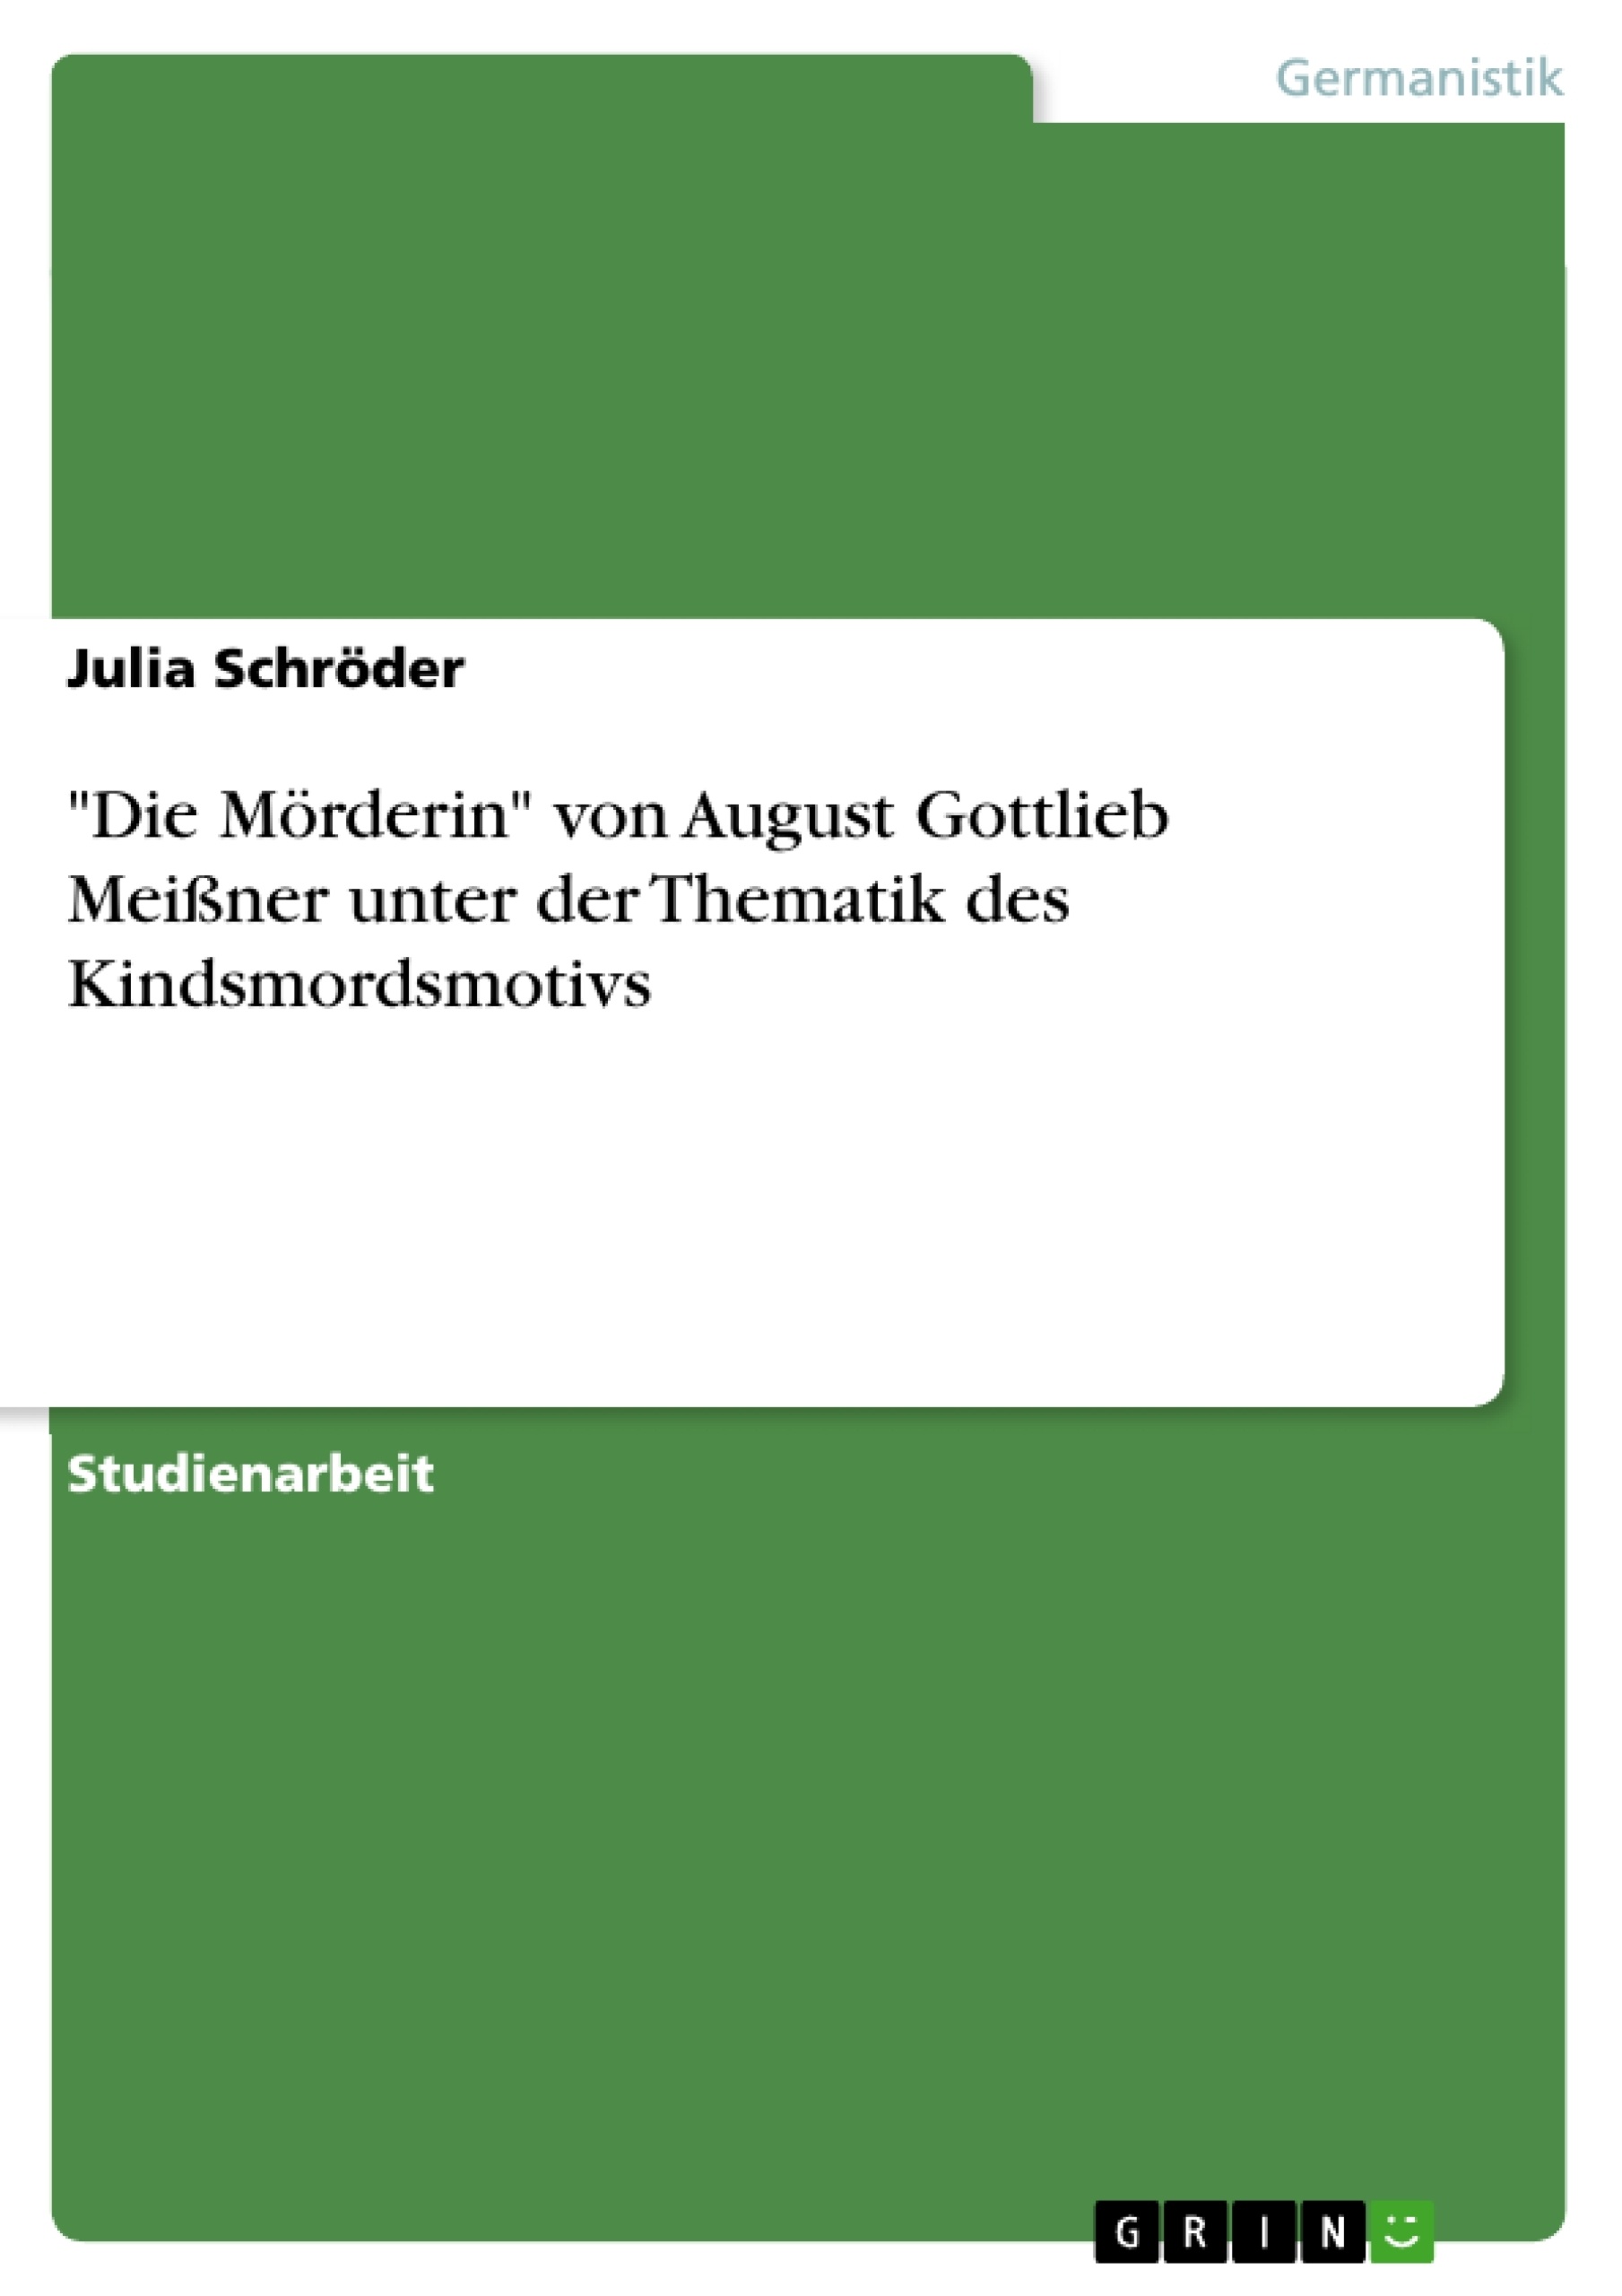 Título: "Die Mörderin" von August Gottlieb Meißner unter der Thematik des Kindsmordsmotivs